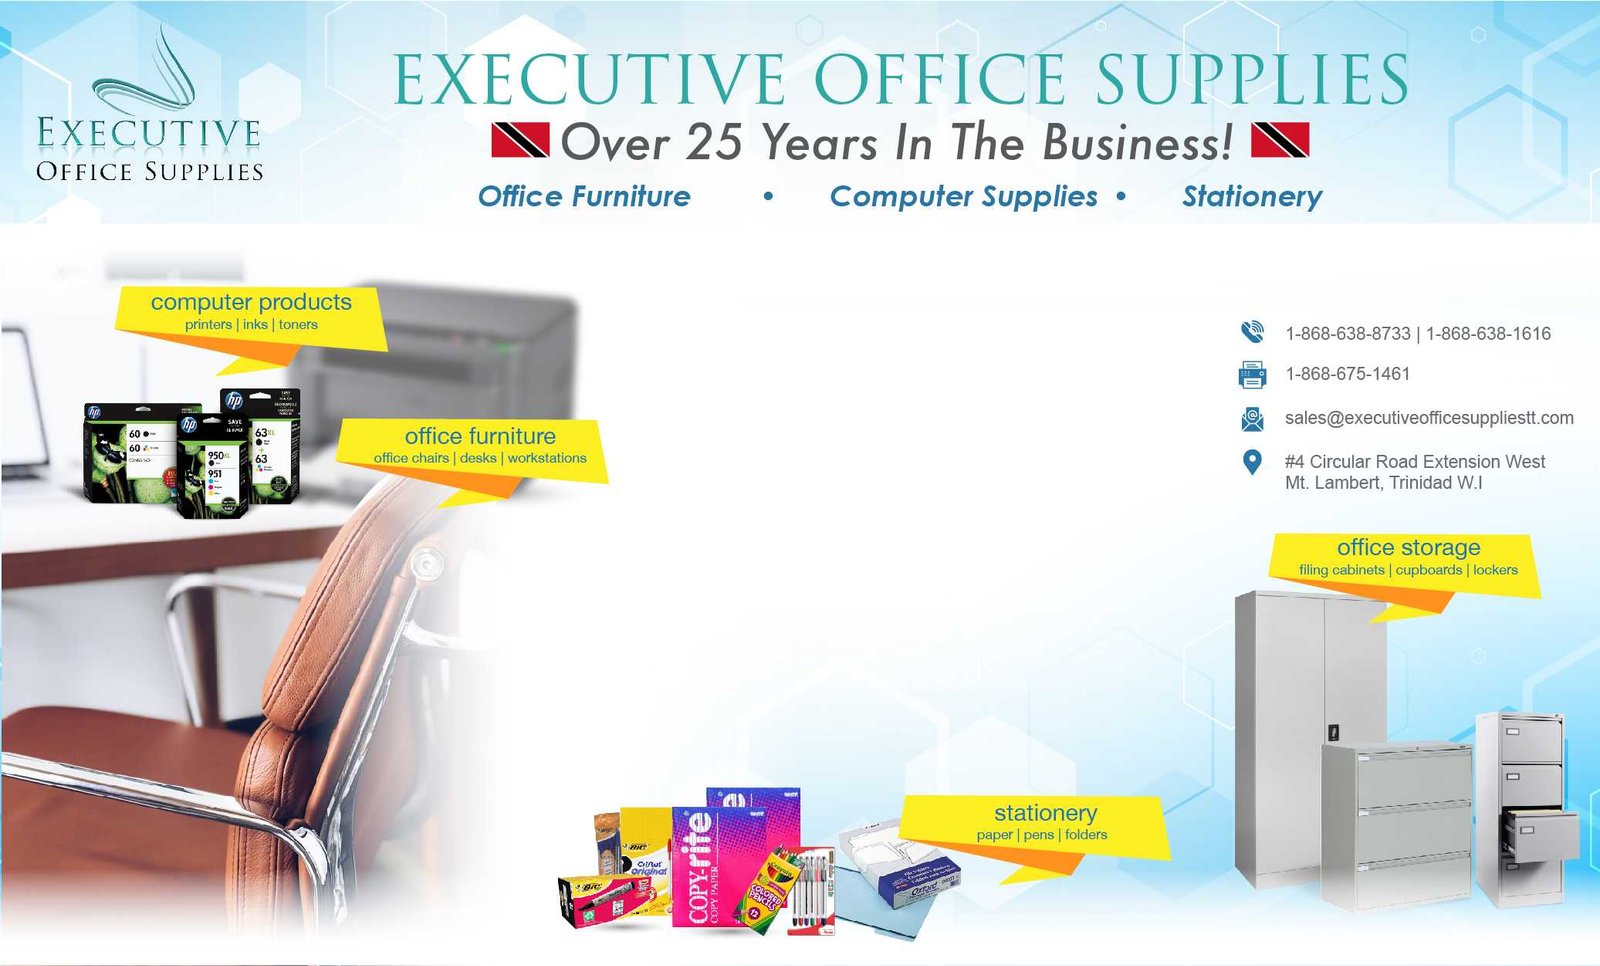 Executive Office Supplies